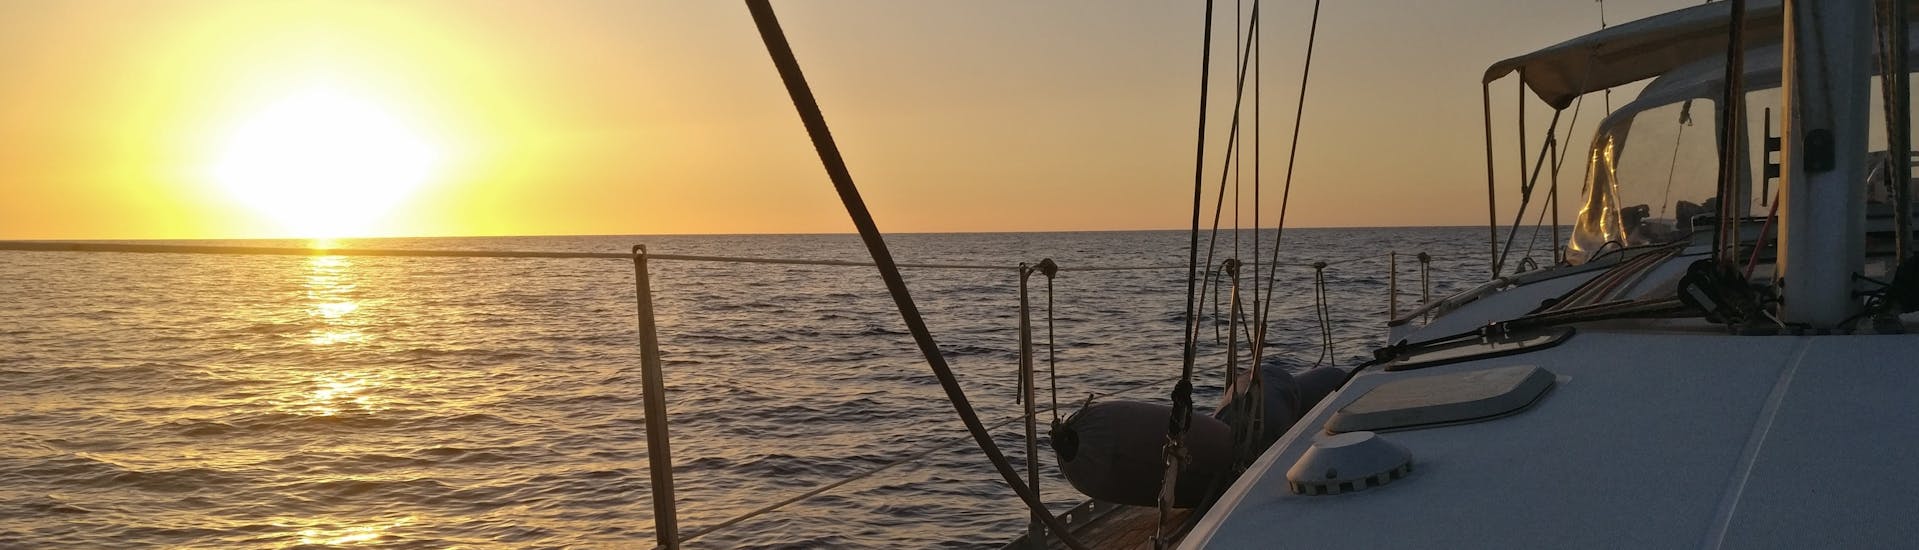 Vue de la mer au coucher du soleil avec un bateau de Quarantesimo Parallelo Leuca.